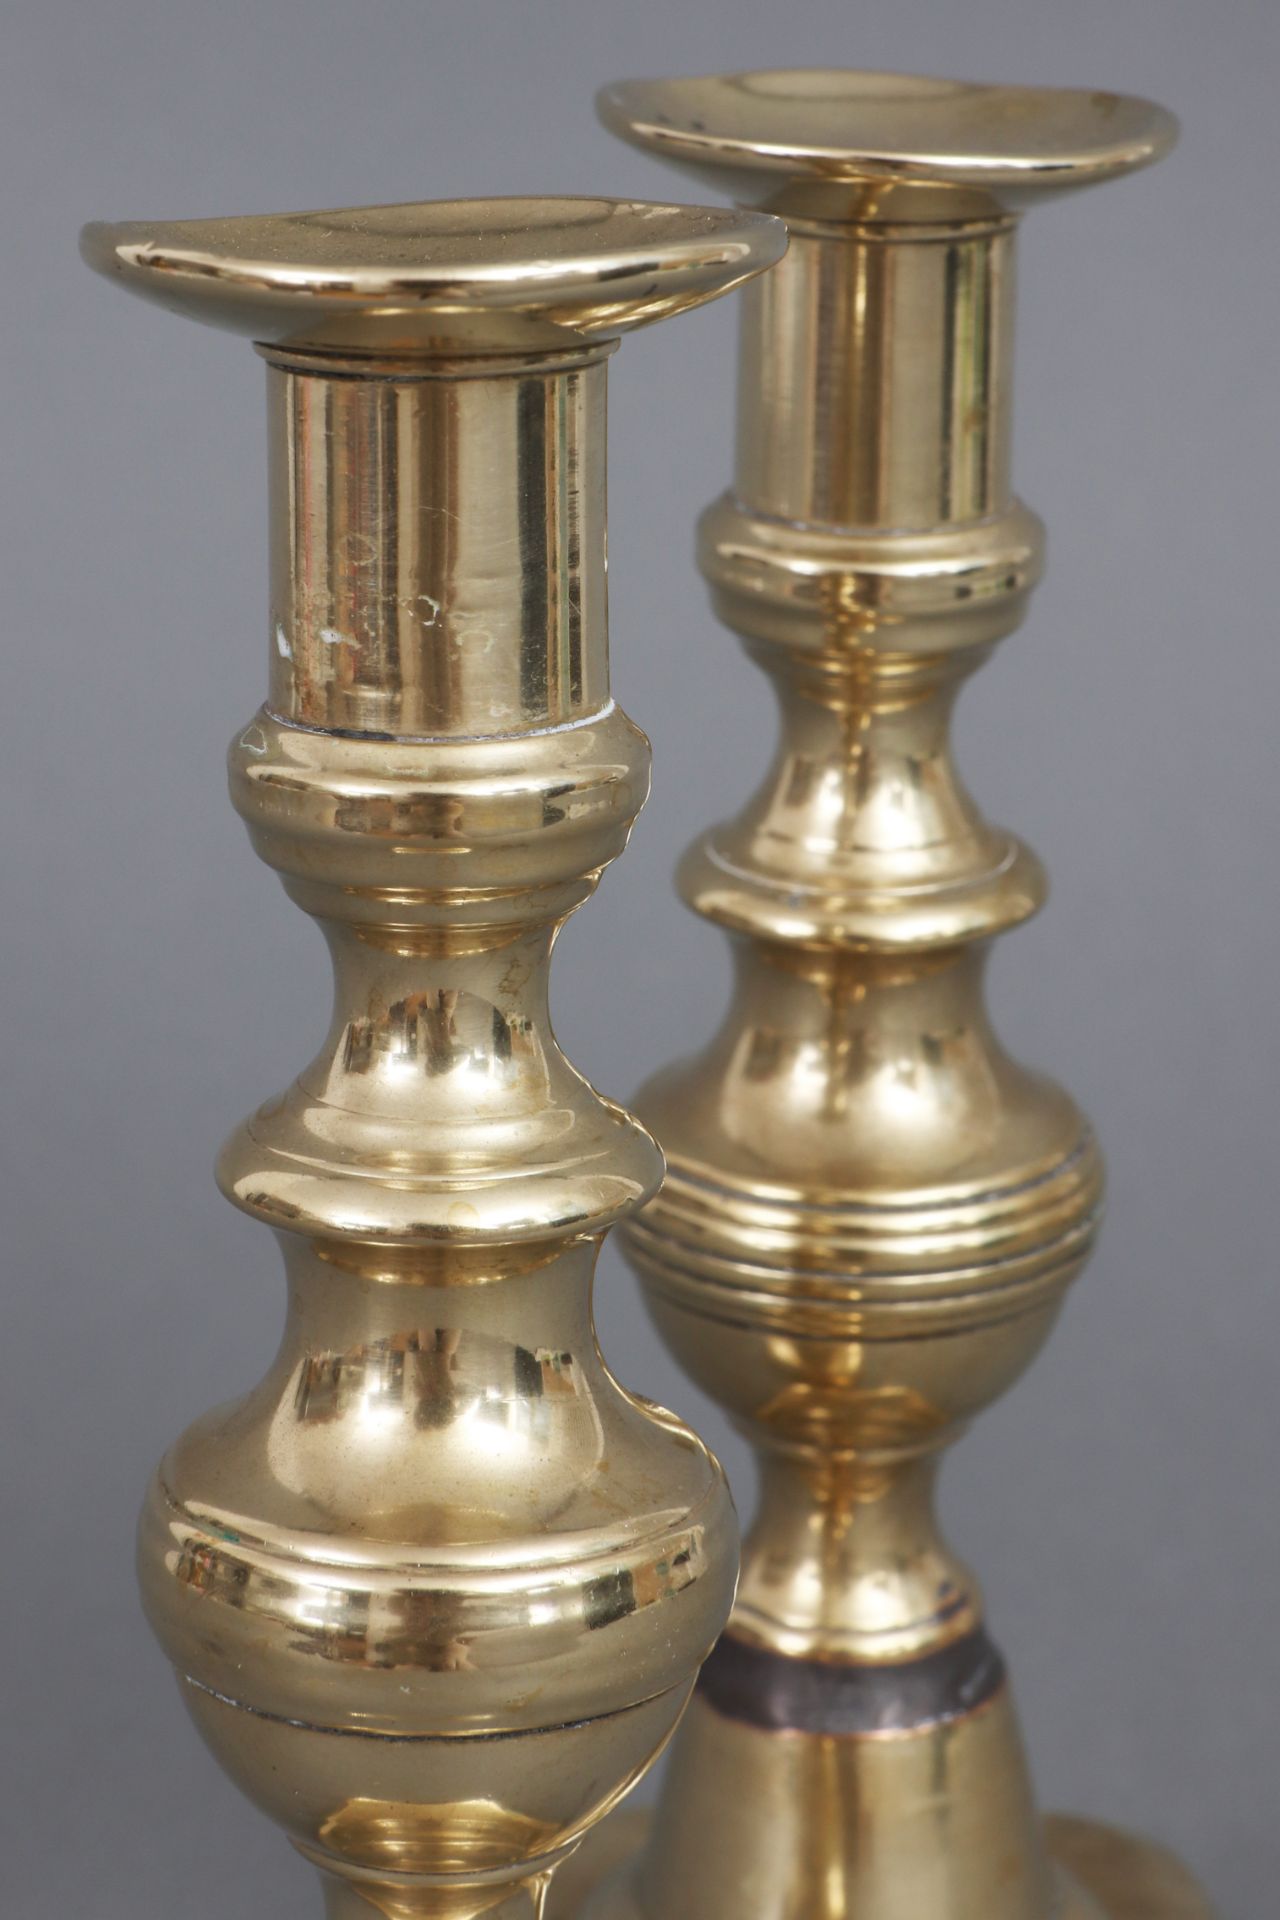 Paar englische Schiebeleuchter des 18./19. Jahrhunderts - Image 2 of 2